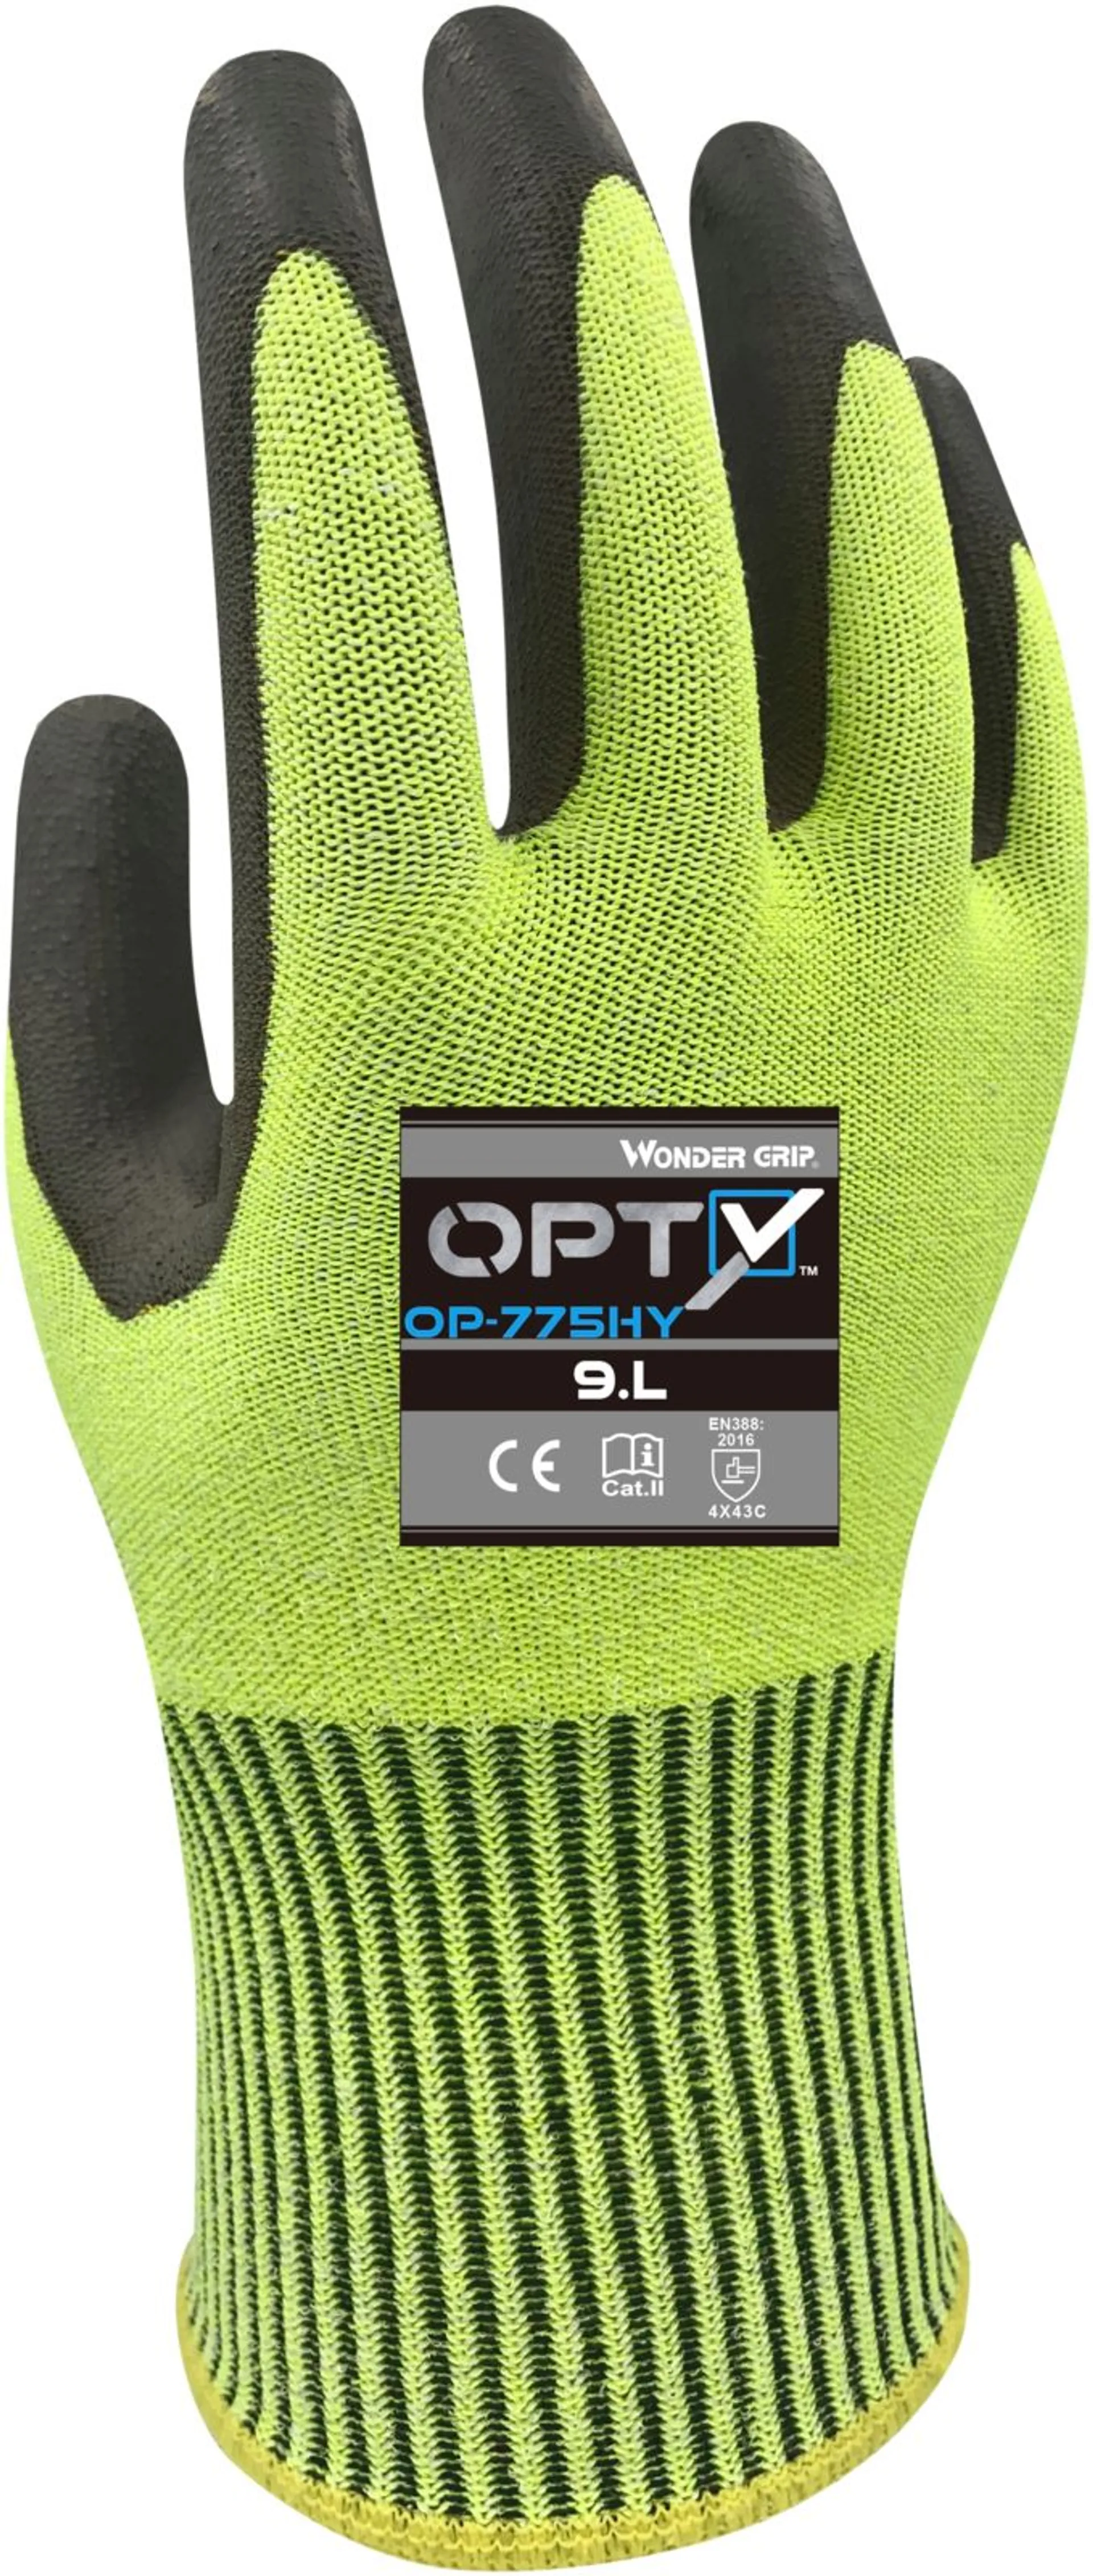 Wonder Grip Opty OP-775HY koko XL polyuretaanipinnoitettu viiltokäsine Lk C